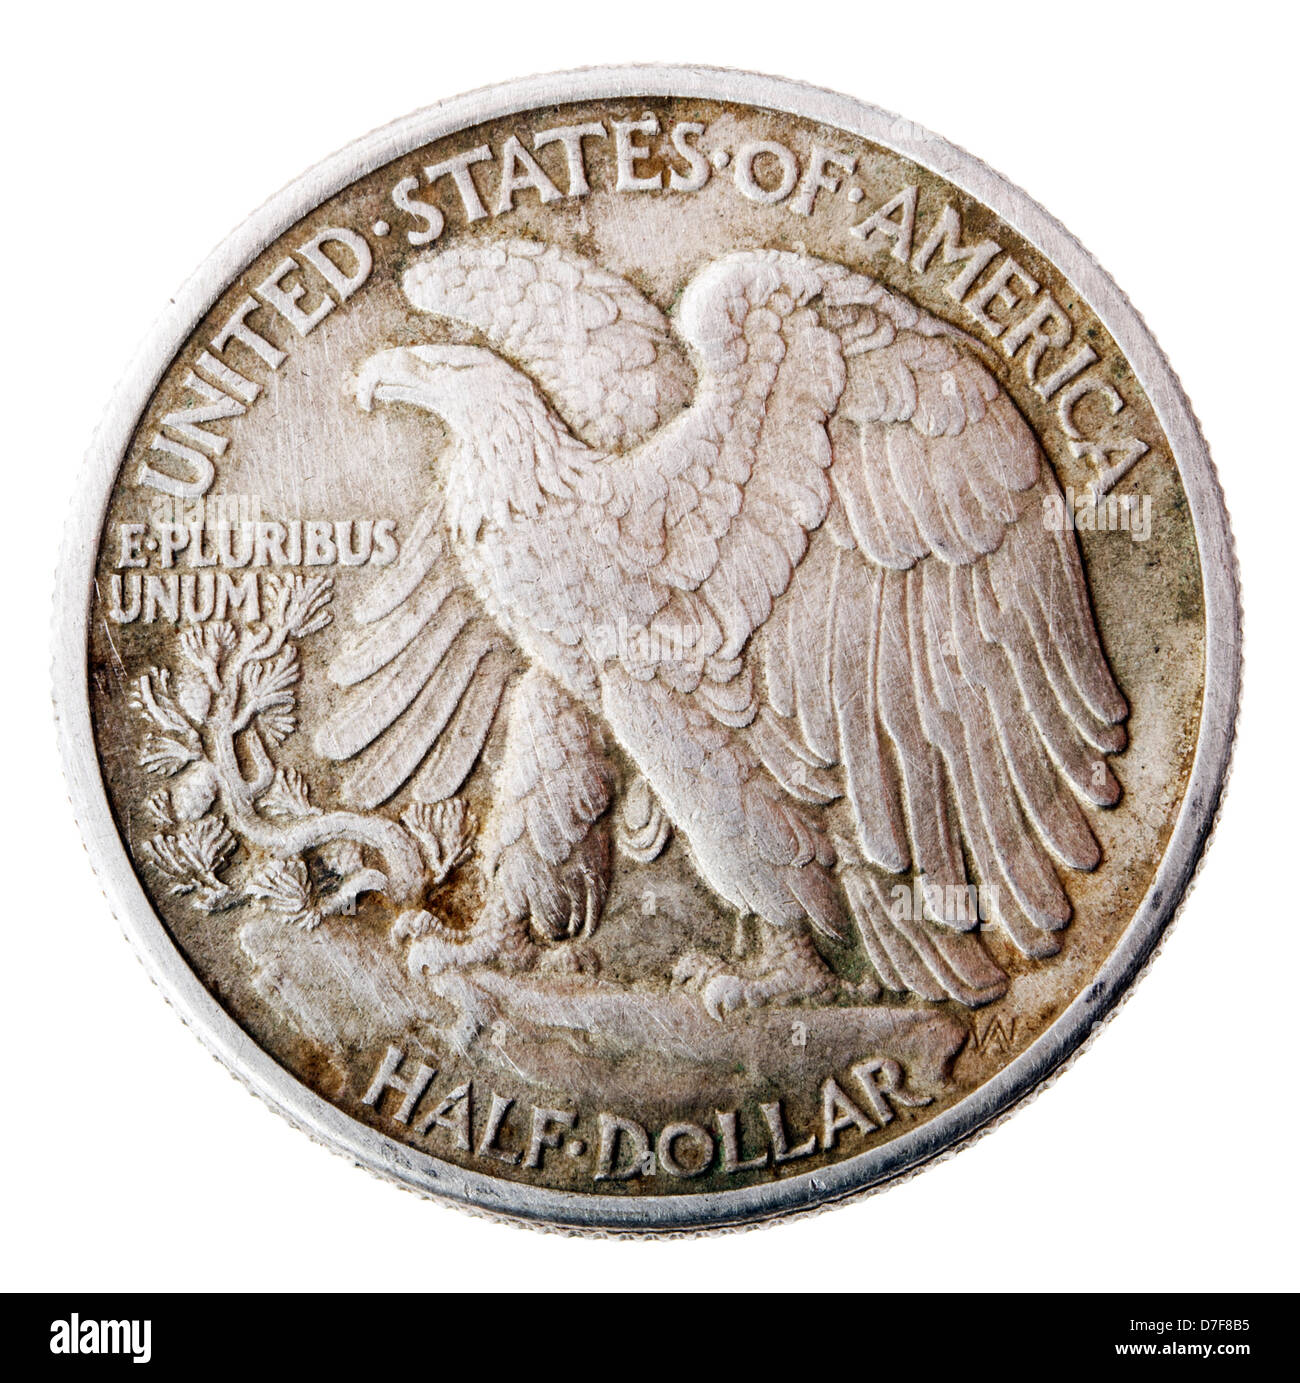 Frontaler Ansicht umkehren (Tails) Seite Silber, den halben Dollar im Jahr 1942 geprägt. Dargestellt ist Weißkopfseeadler steigt vom Berggipfel Barsch. Stockfoto